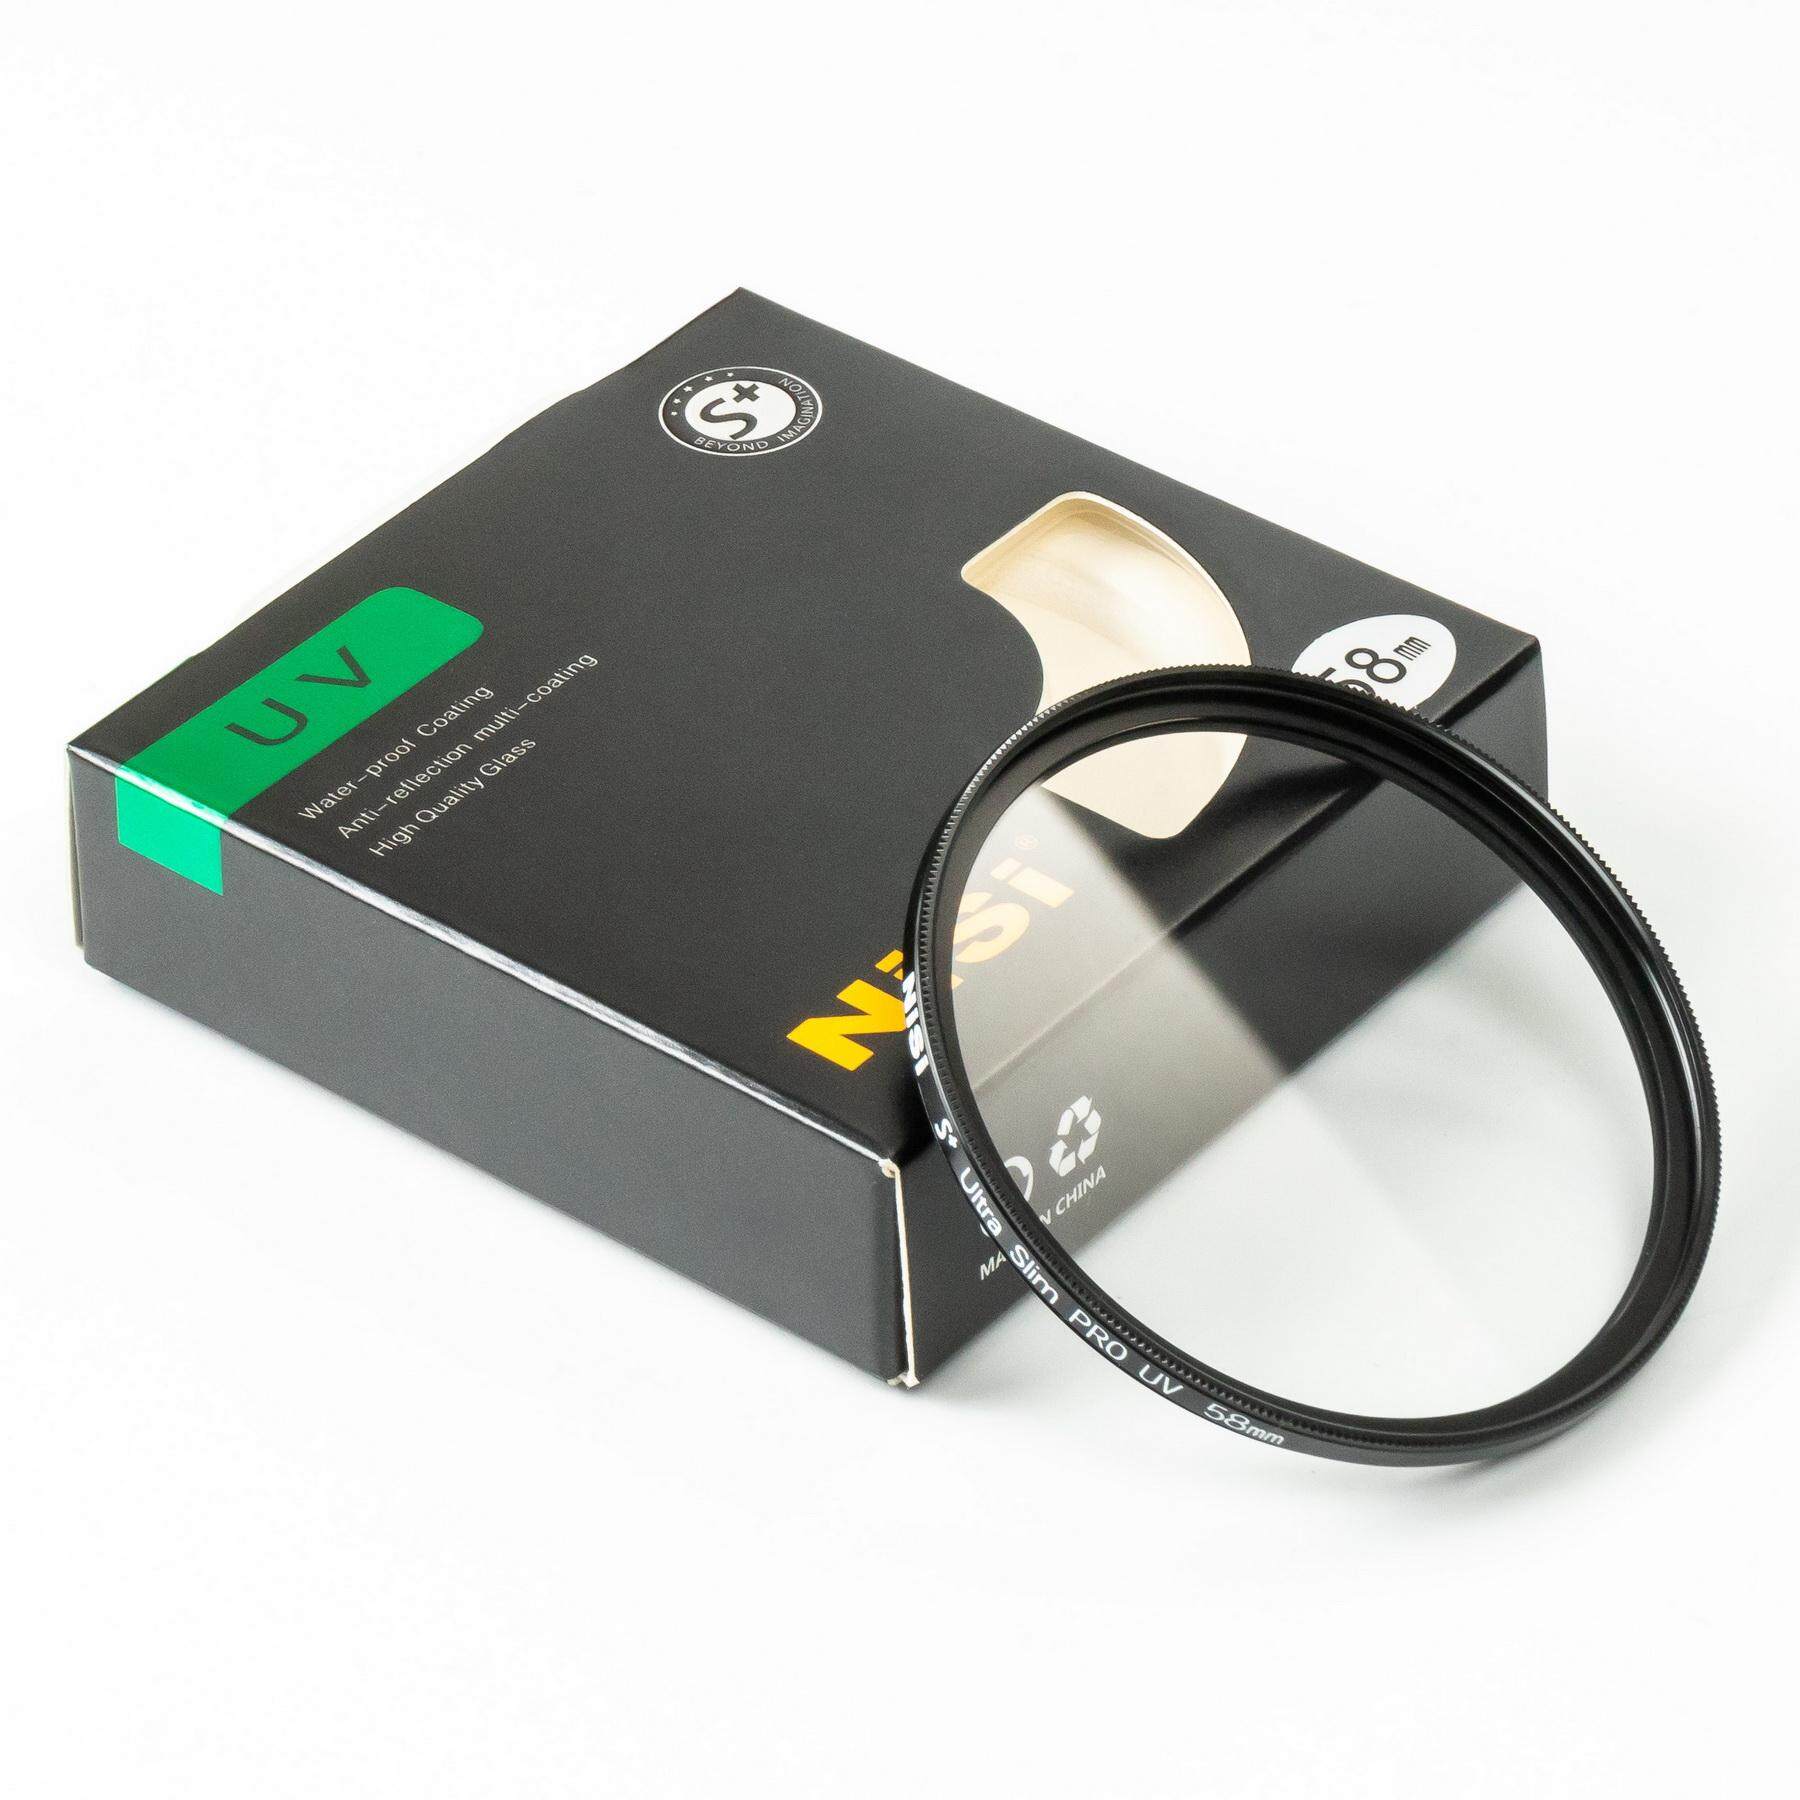 NISI 58mm UV Filter ที่กรองรังสียูวีโซด์ขนาดบางเป็นพิเศษ Professional ตัวกรองยูวีด้านคู่ 12 การเคลือบหลายชั้นกรอง ( NISI UV Filter 58mm )( ฟิลเตอร์ 58 มิลลิเมตร บางพิเศษ )